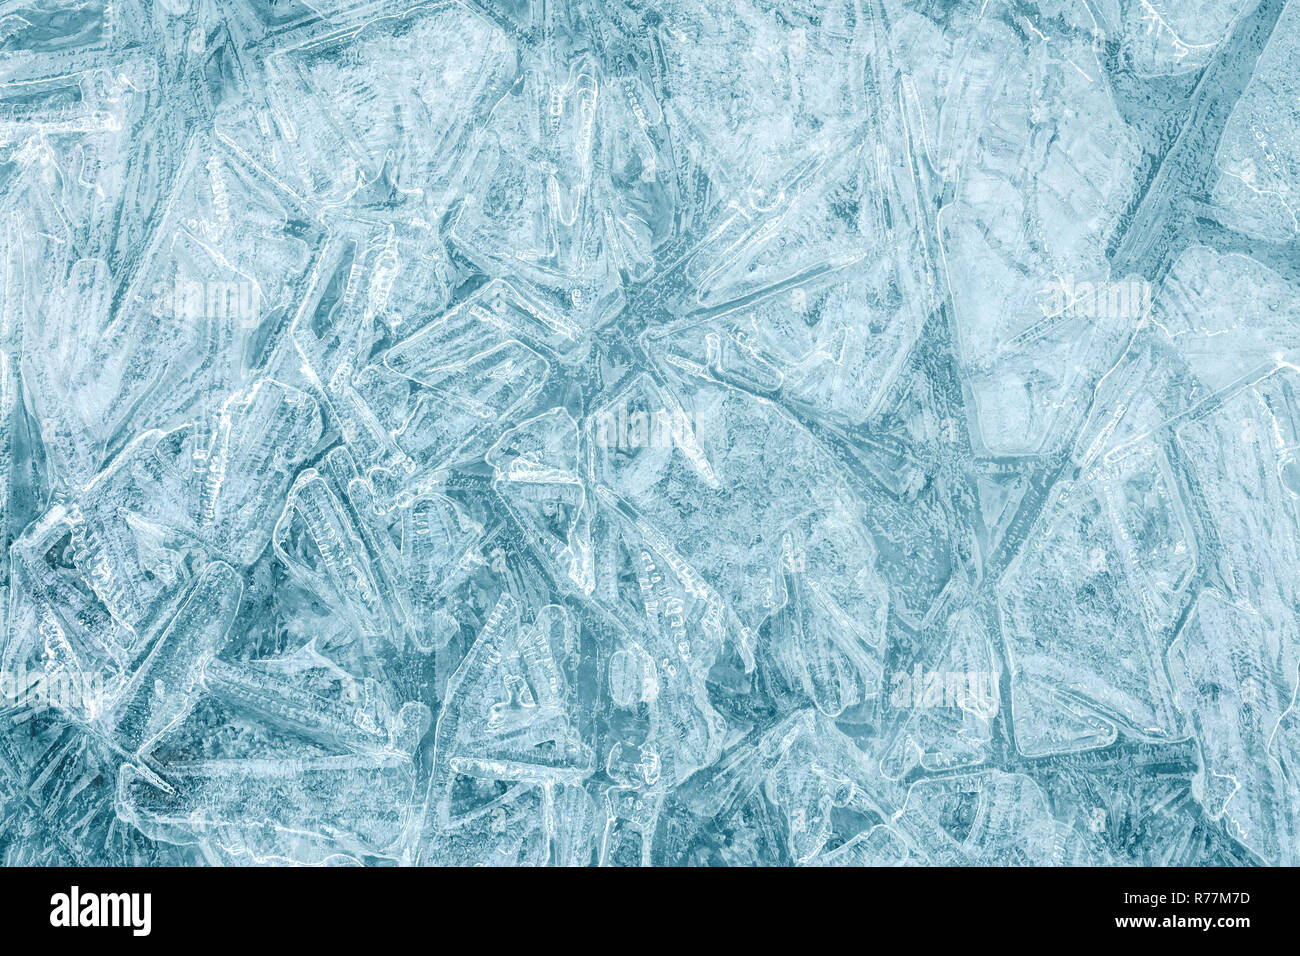 Résumé Contexte L'hiver glacial. Les blocs de glace avec divers modèles et des fissures Banque D'Images